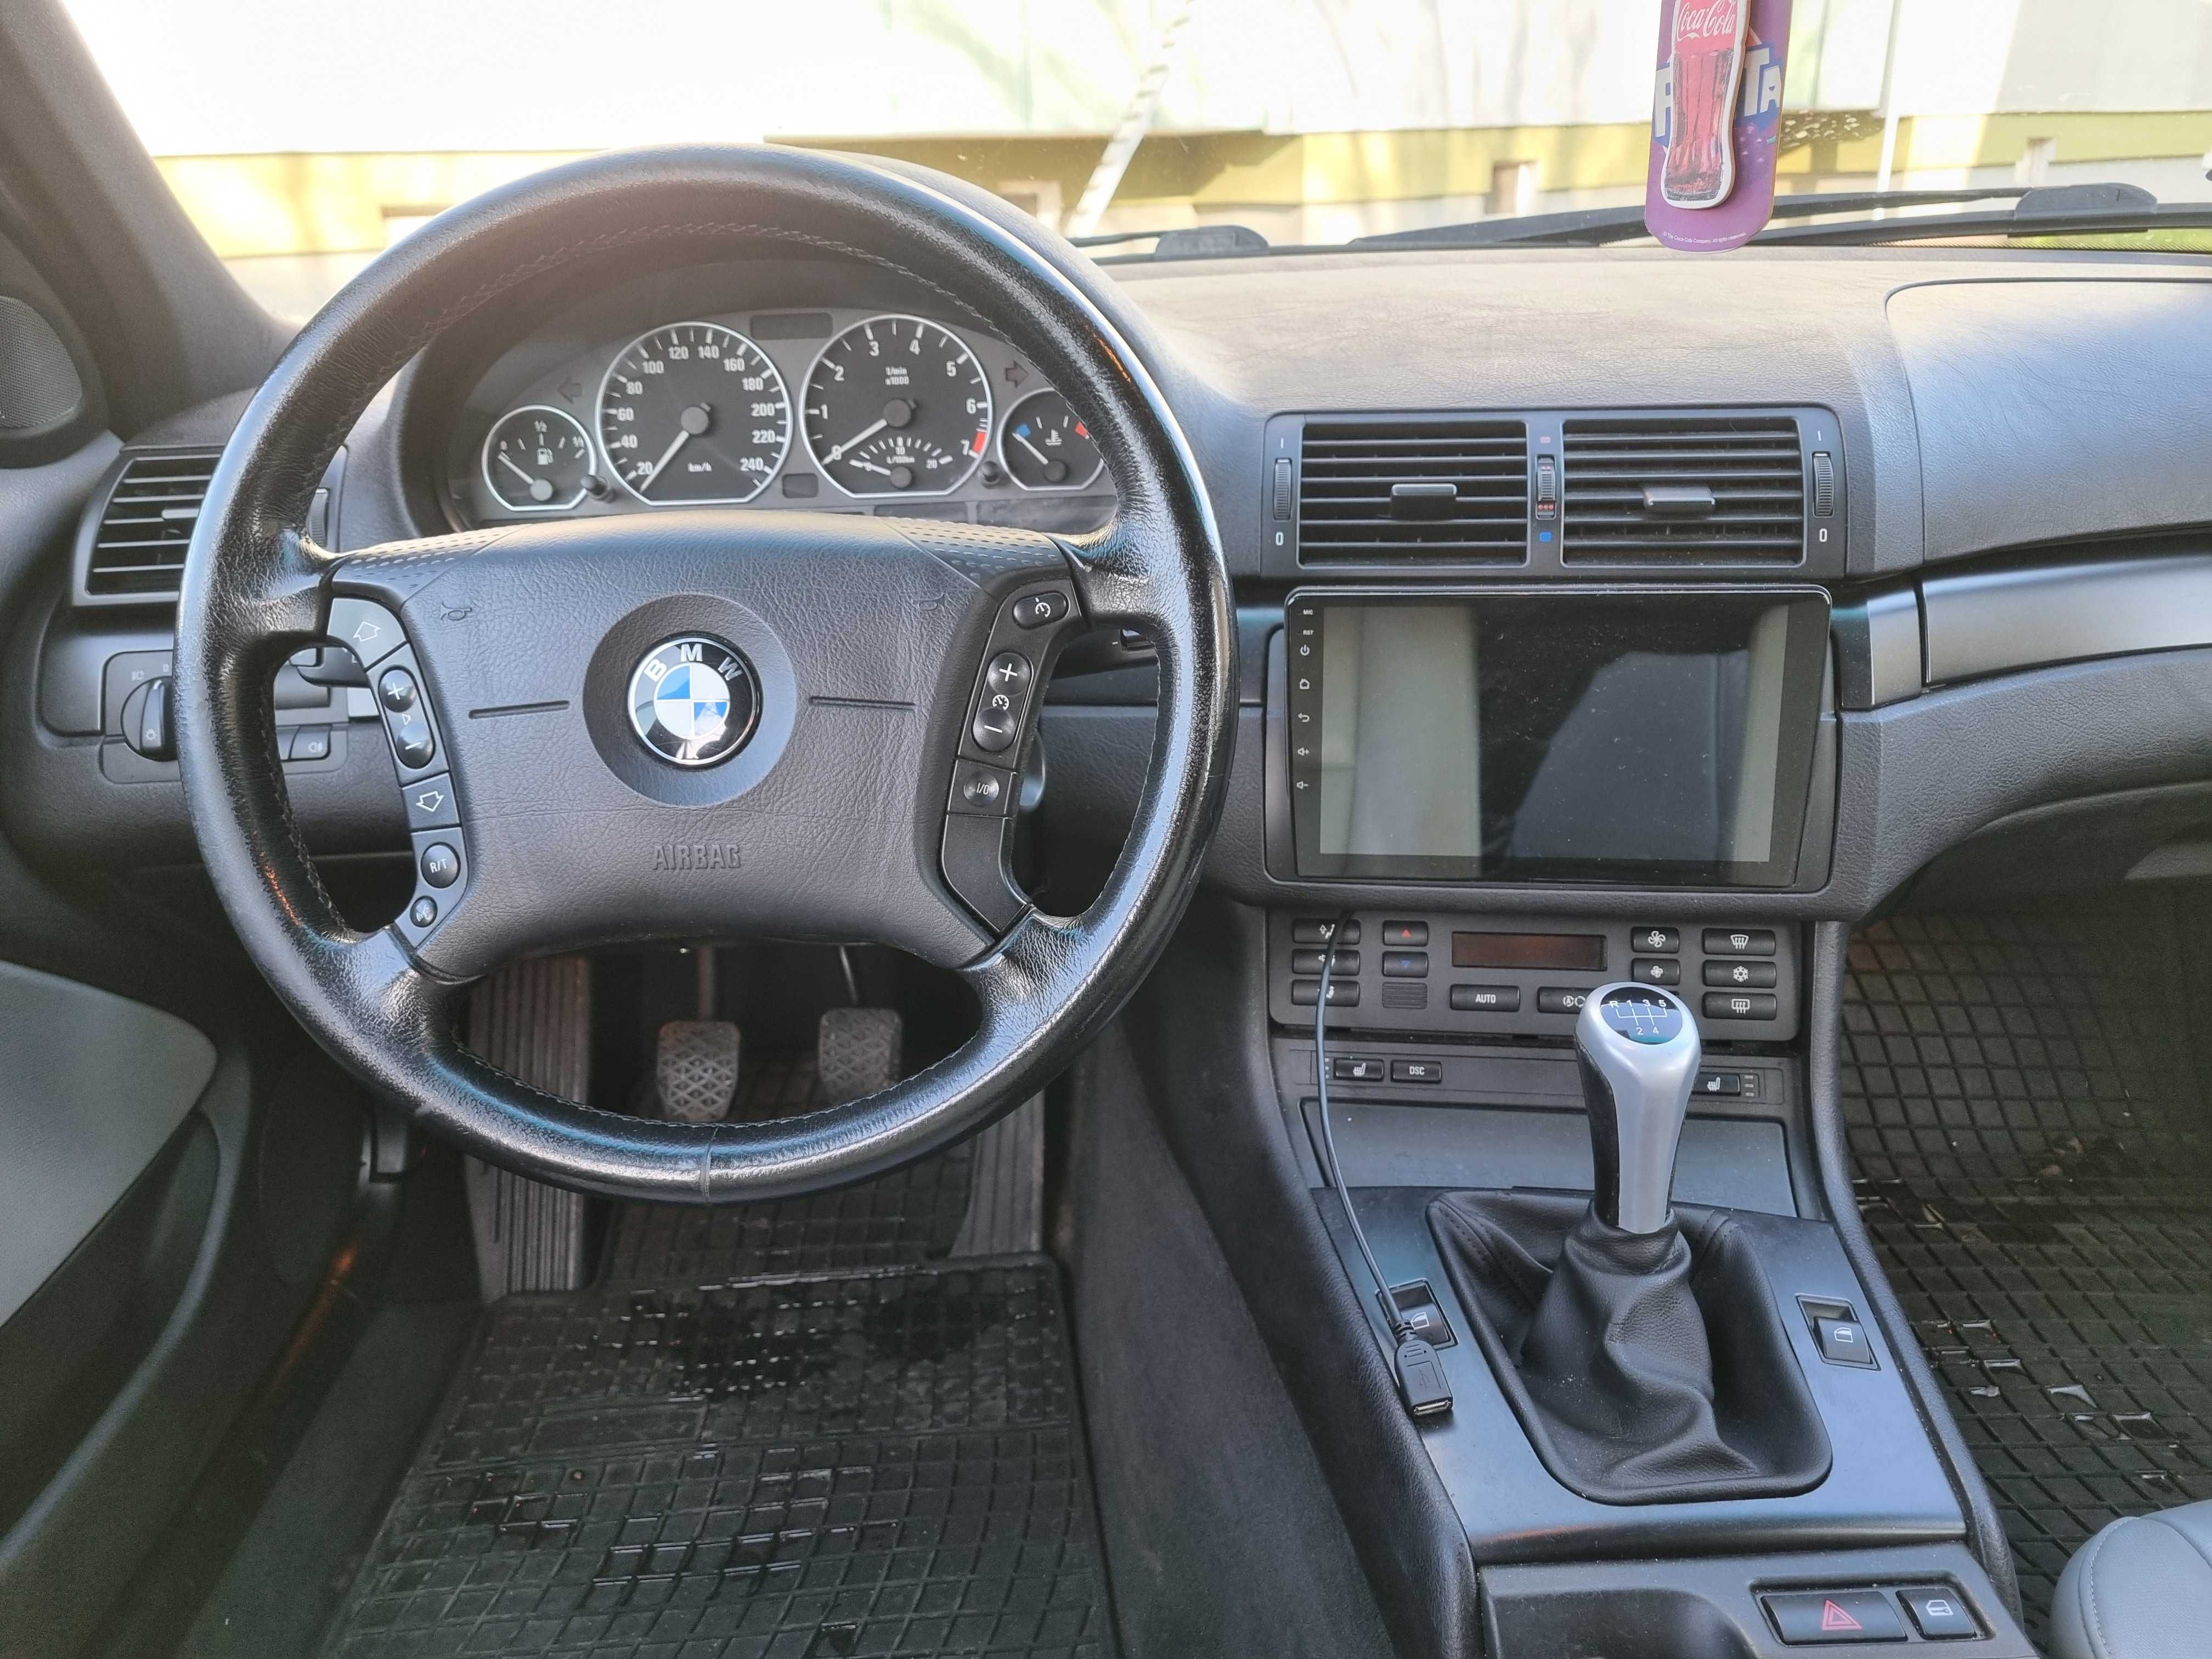 BMW E 46 benzyna xenony,podgrzewane siedzenia,tempomat,navigacja,skóry